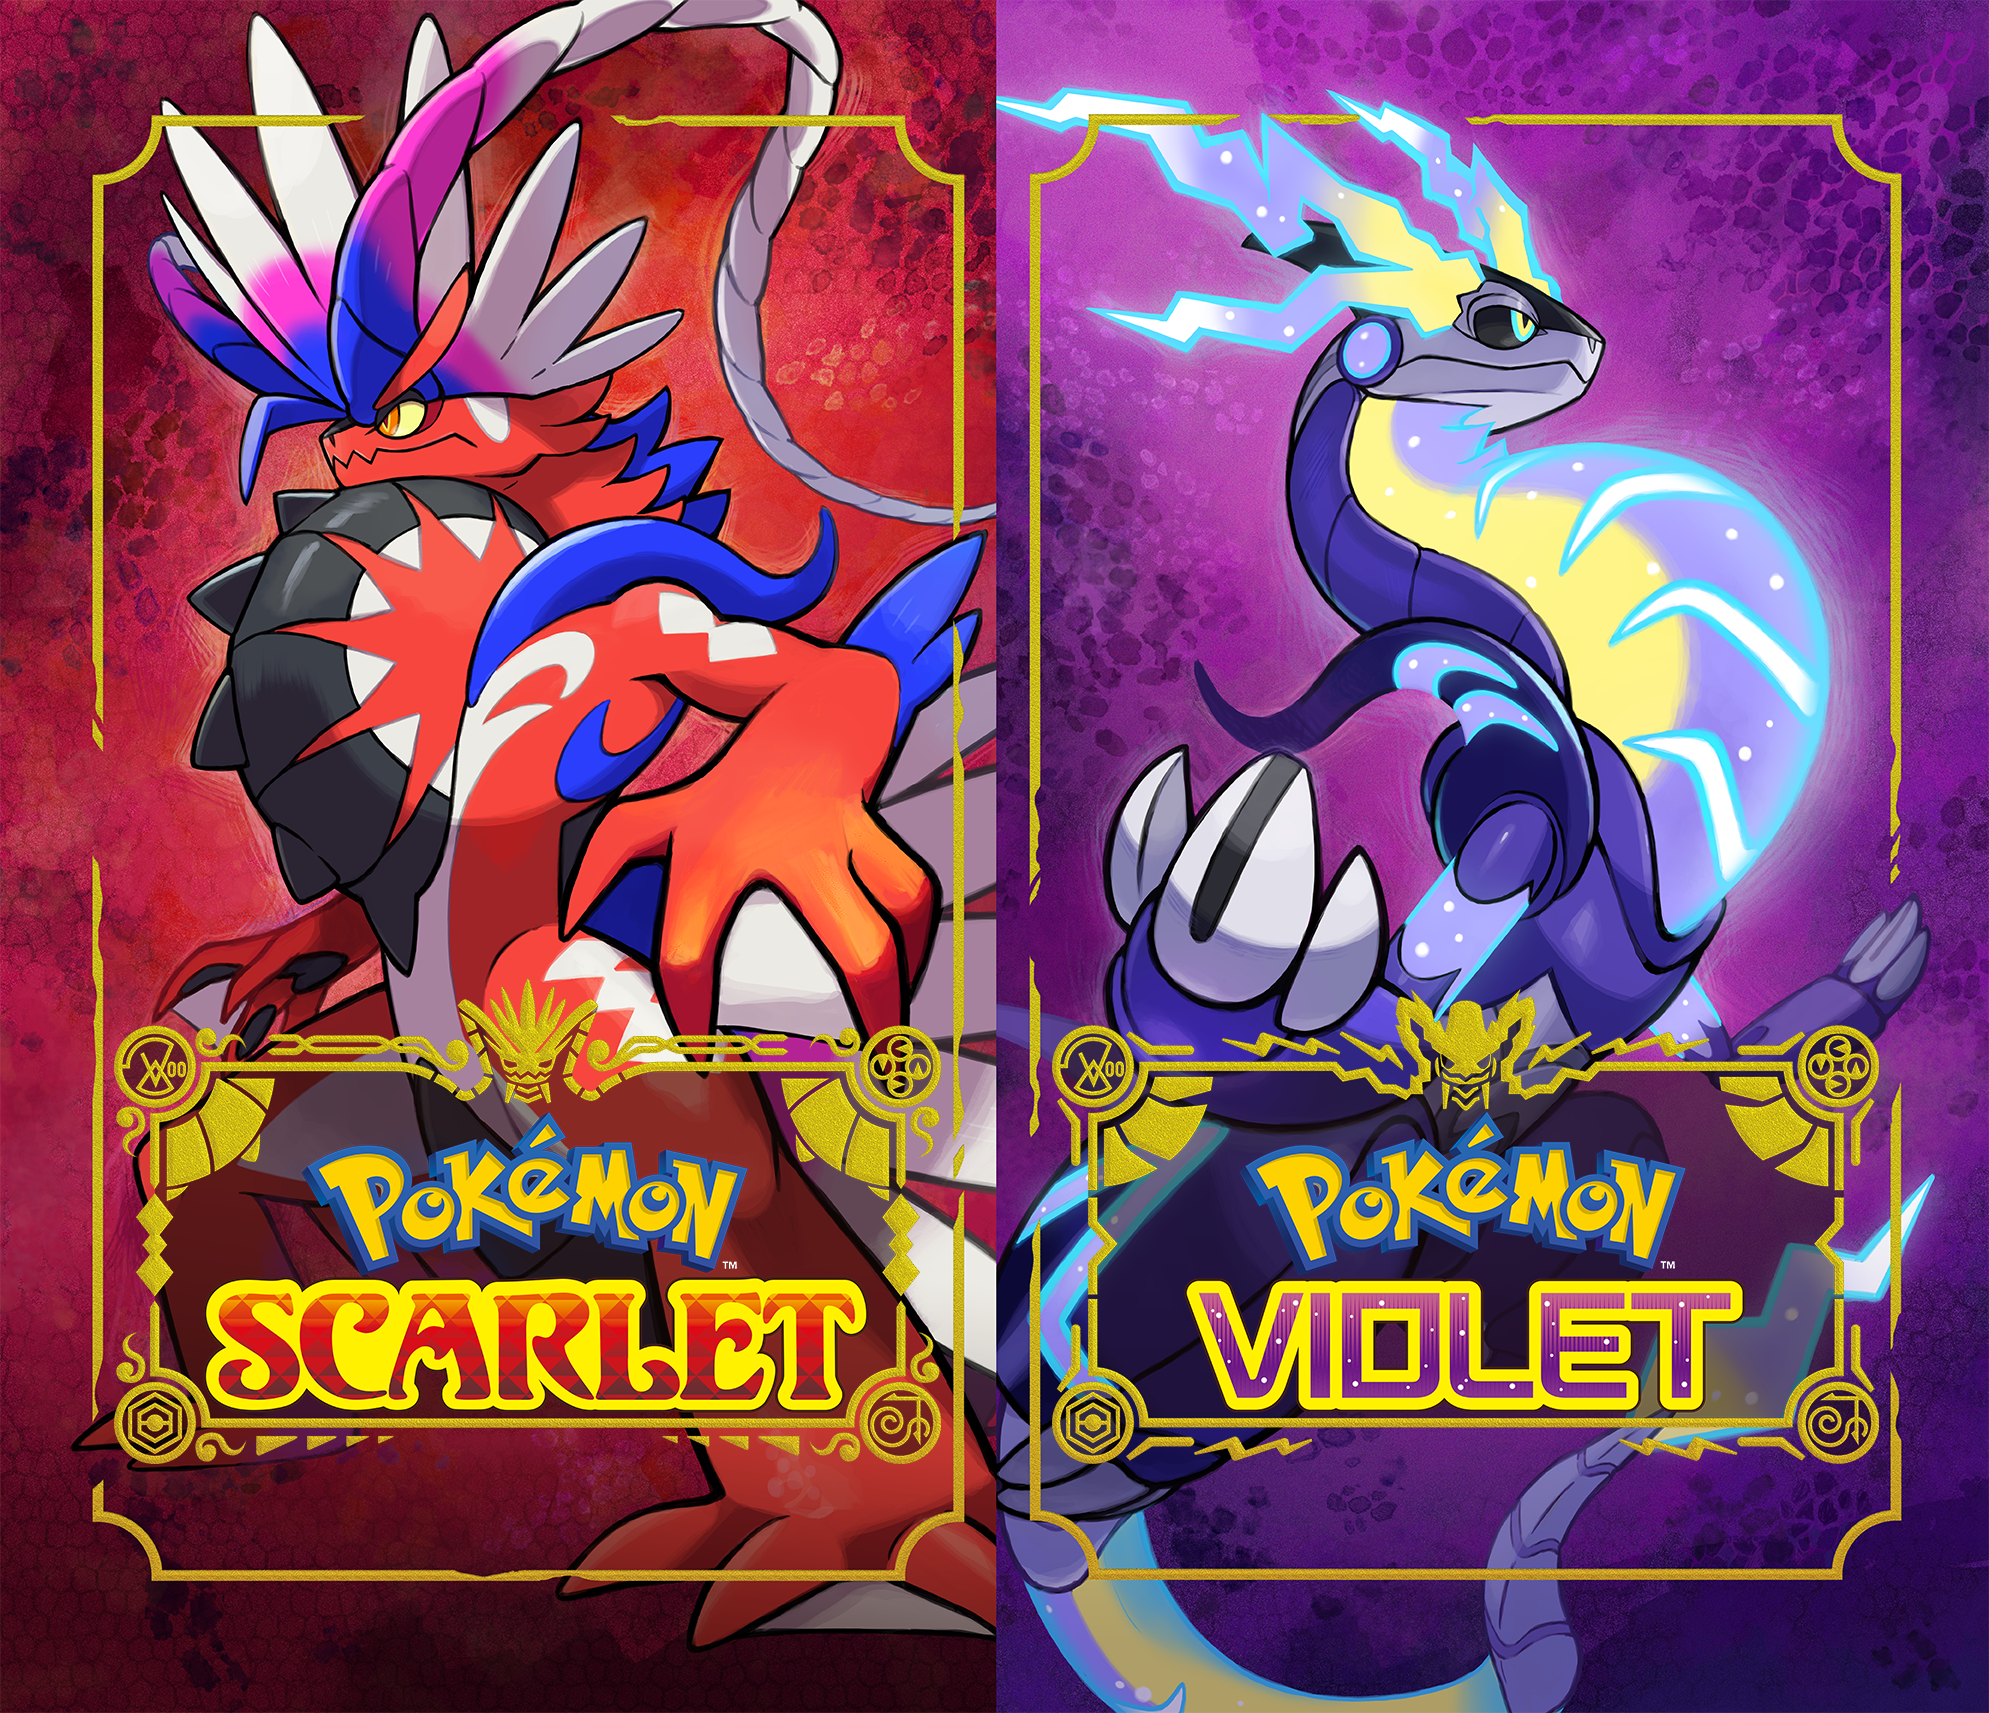 Ceruledge — Pokémon Scarlet and Pokémon Violet